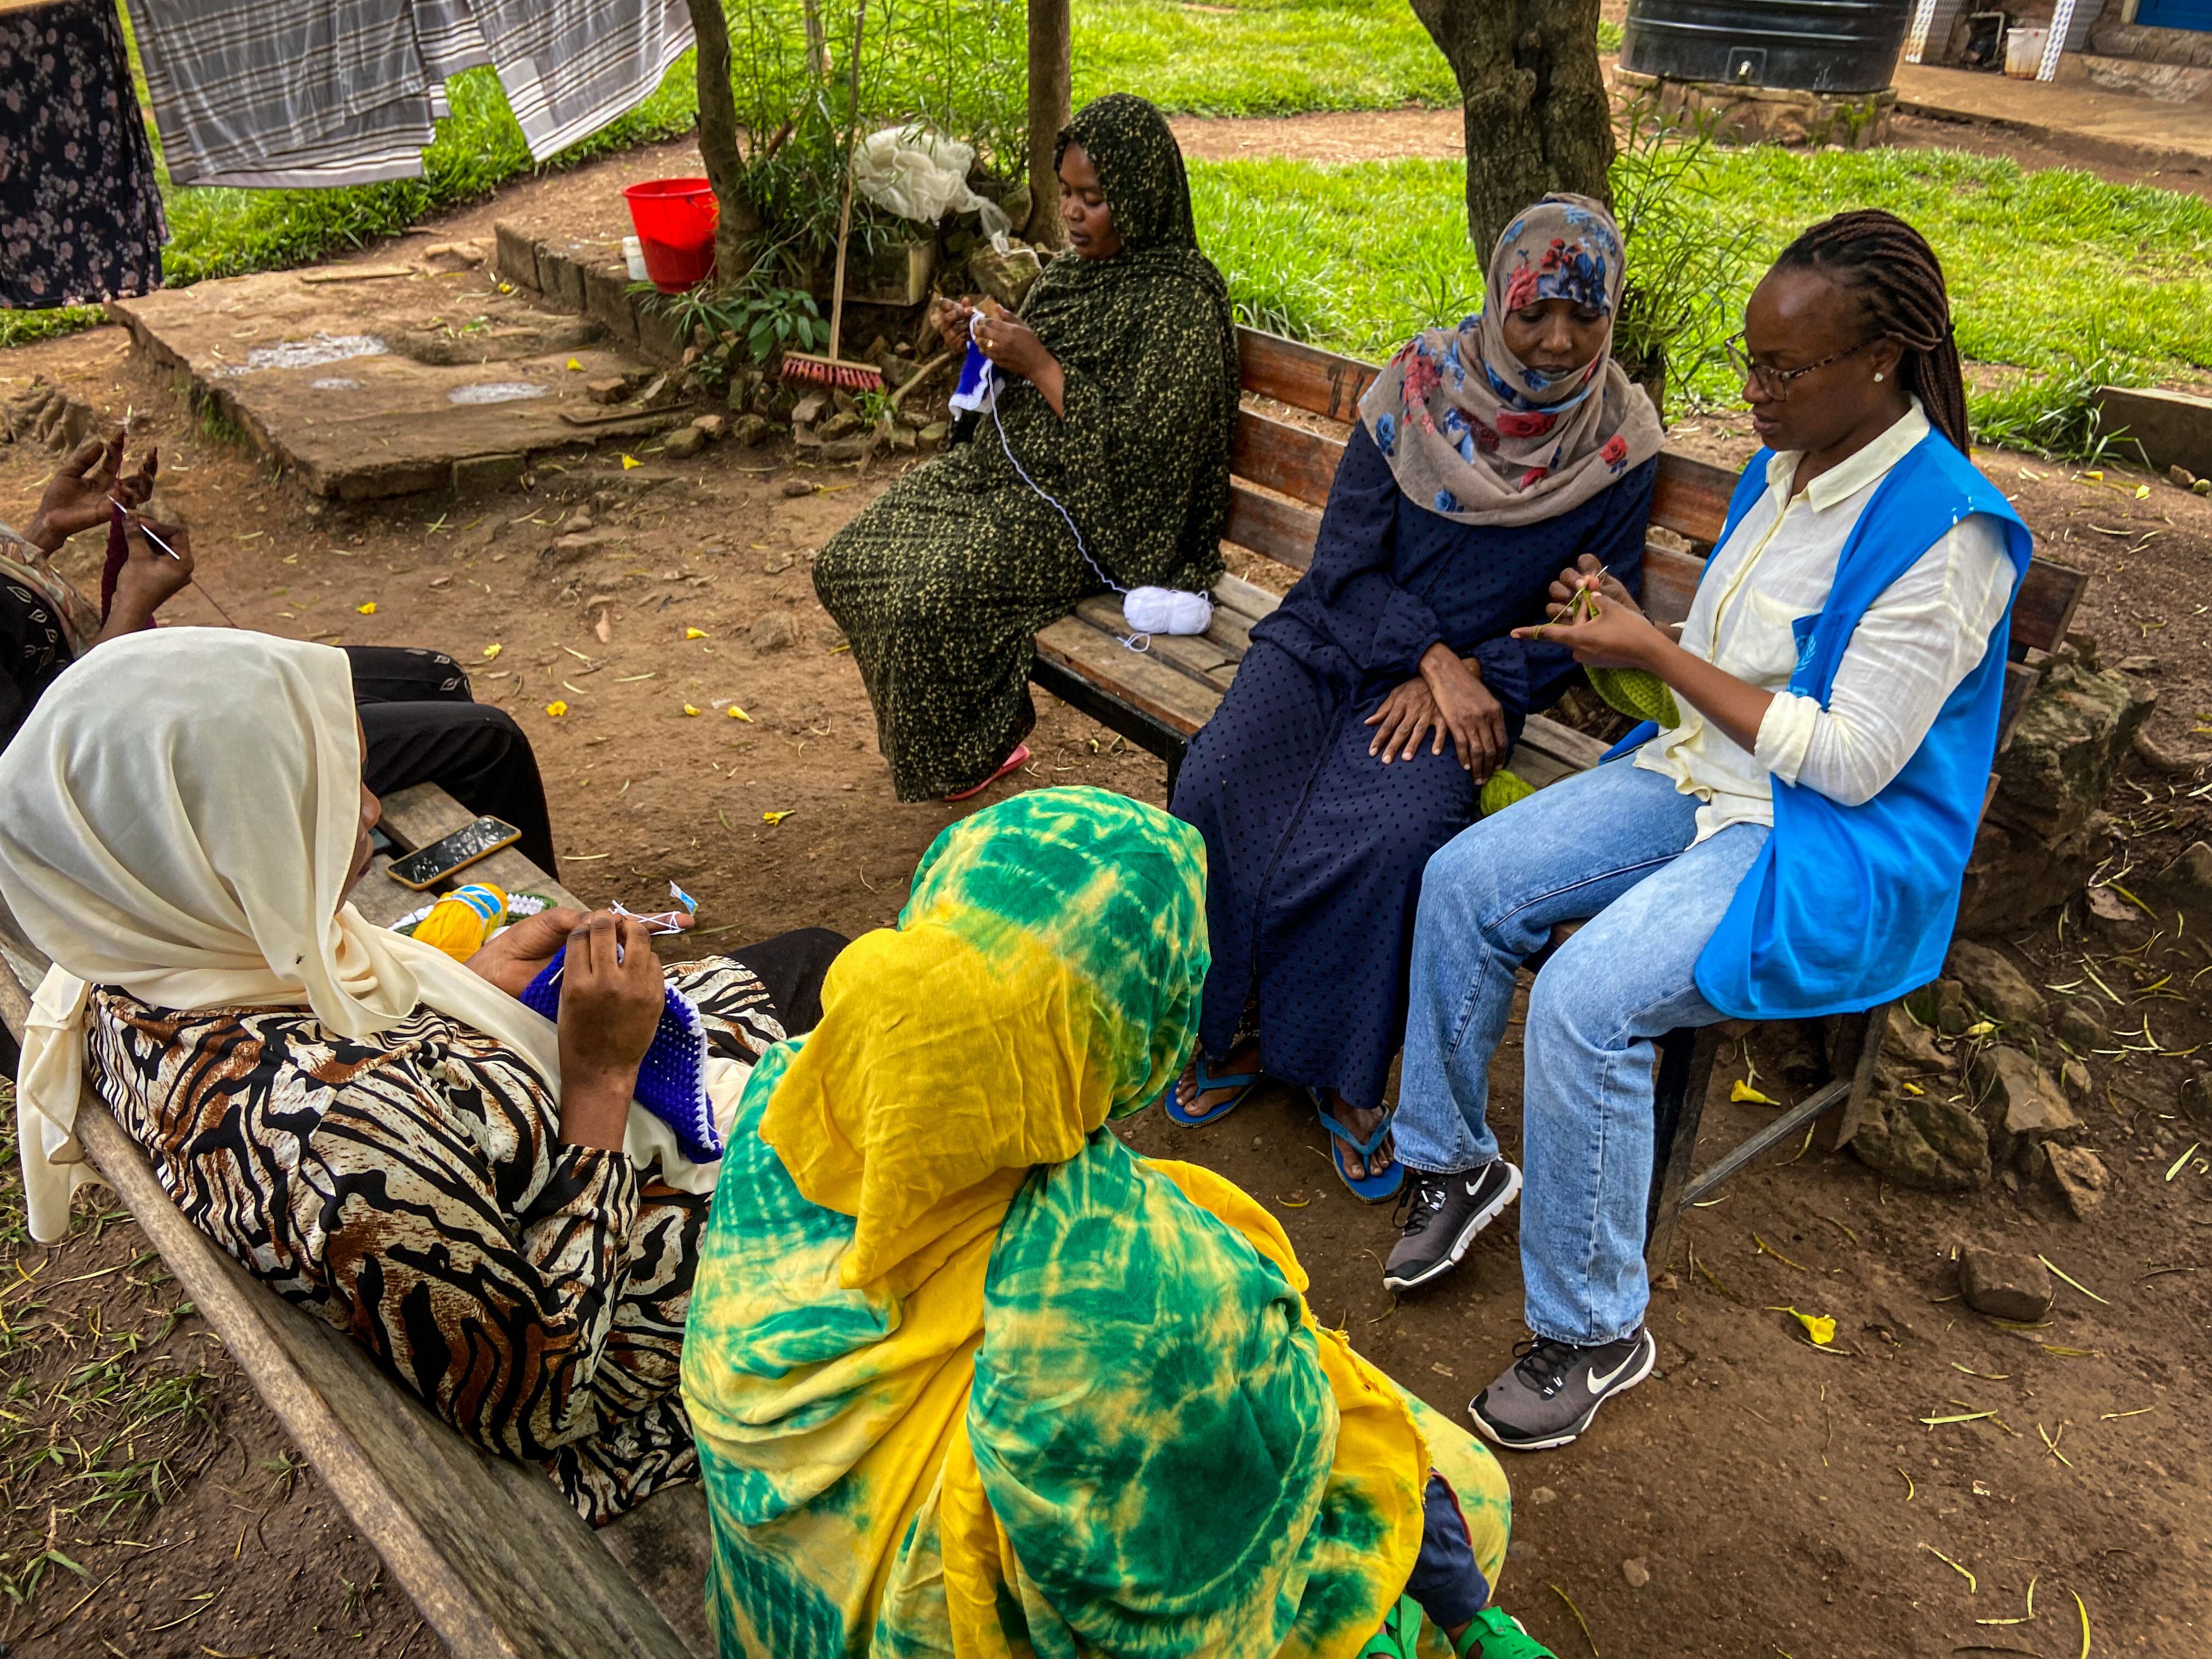 Un grupo de mujeres sudanesas refugiadas charlaba el 14 de marzo en uno de los espacios comunes del llamado centro de tránsito de emergencia. Ellas huyeron de su país incluso antes de que estallase la guerra, hace un año. Los solicitantes de asilo alojados en Gashora (Ruanda) proceden en su mayoría de Somalia, Eritrea, Etiopía y Sudán.